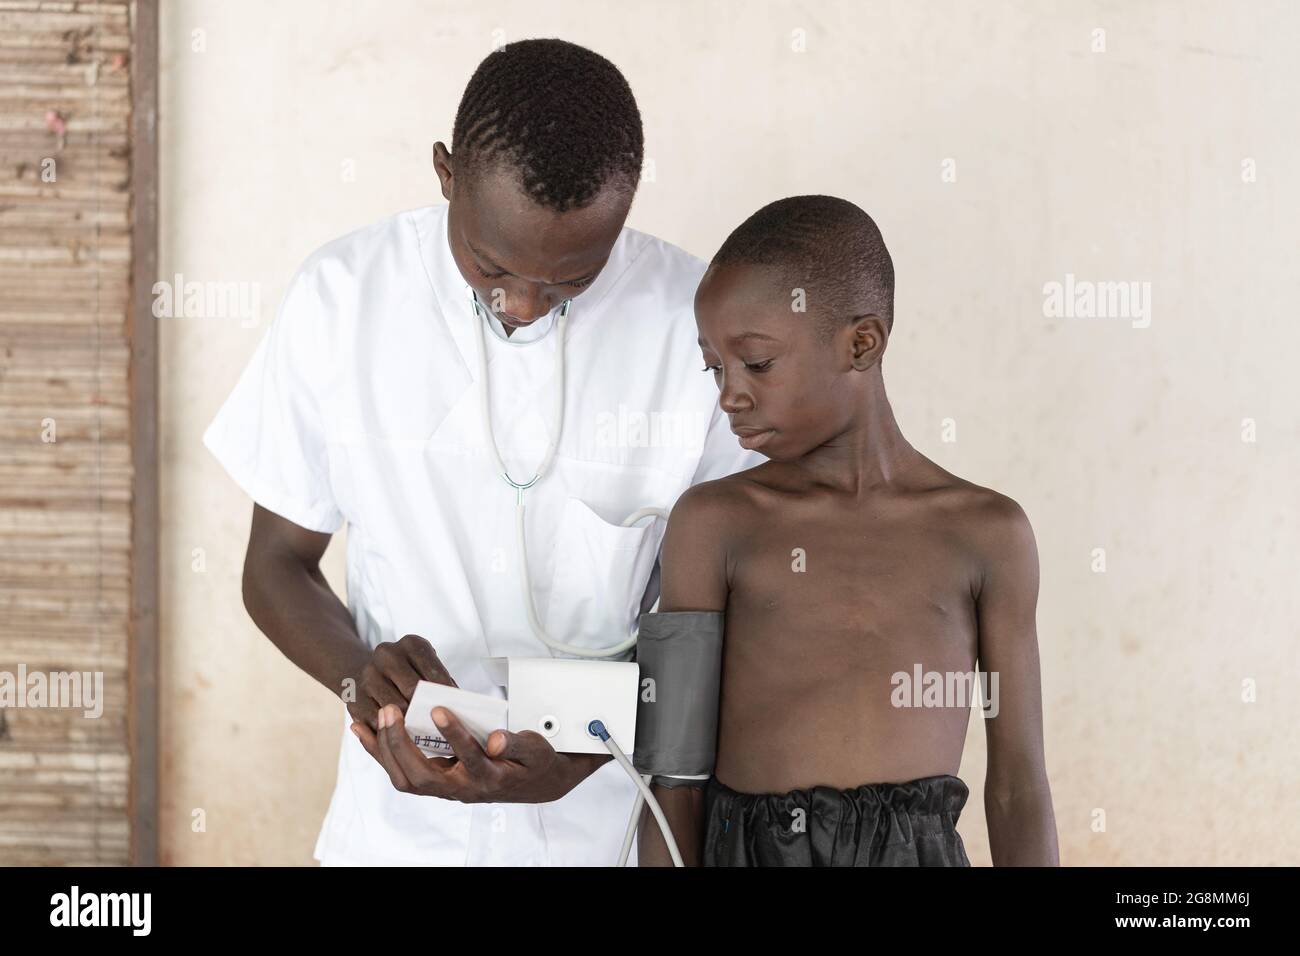 C'est l'image d'une infirmière africaine travaillant dans un hôpital avec un sphygmomanomètre. La tension artérielle d'un enfant noir est mesurée. Banque D'Images